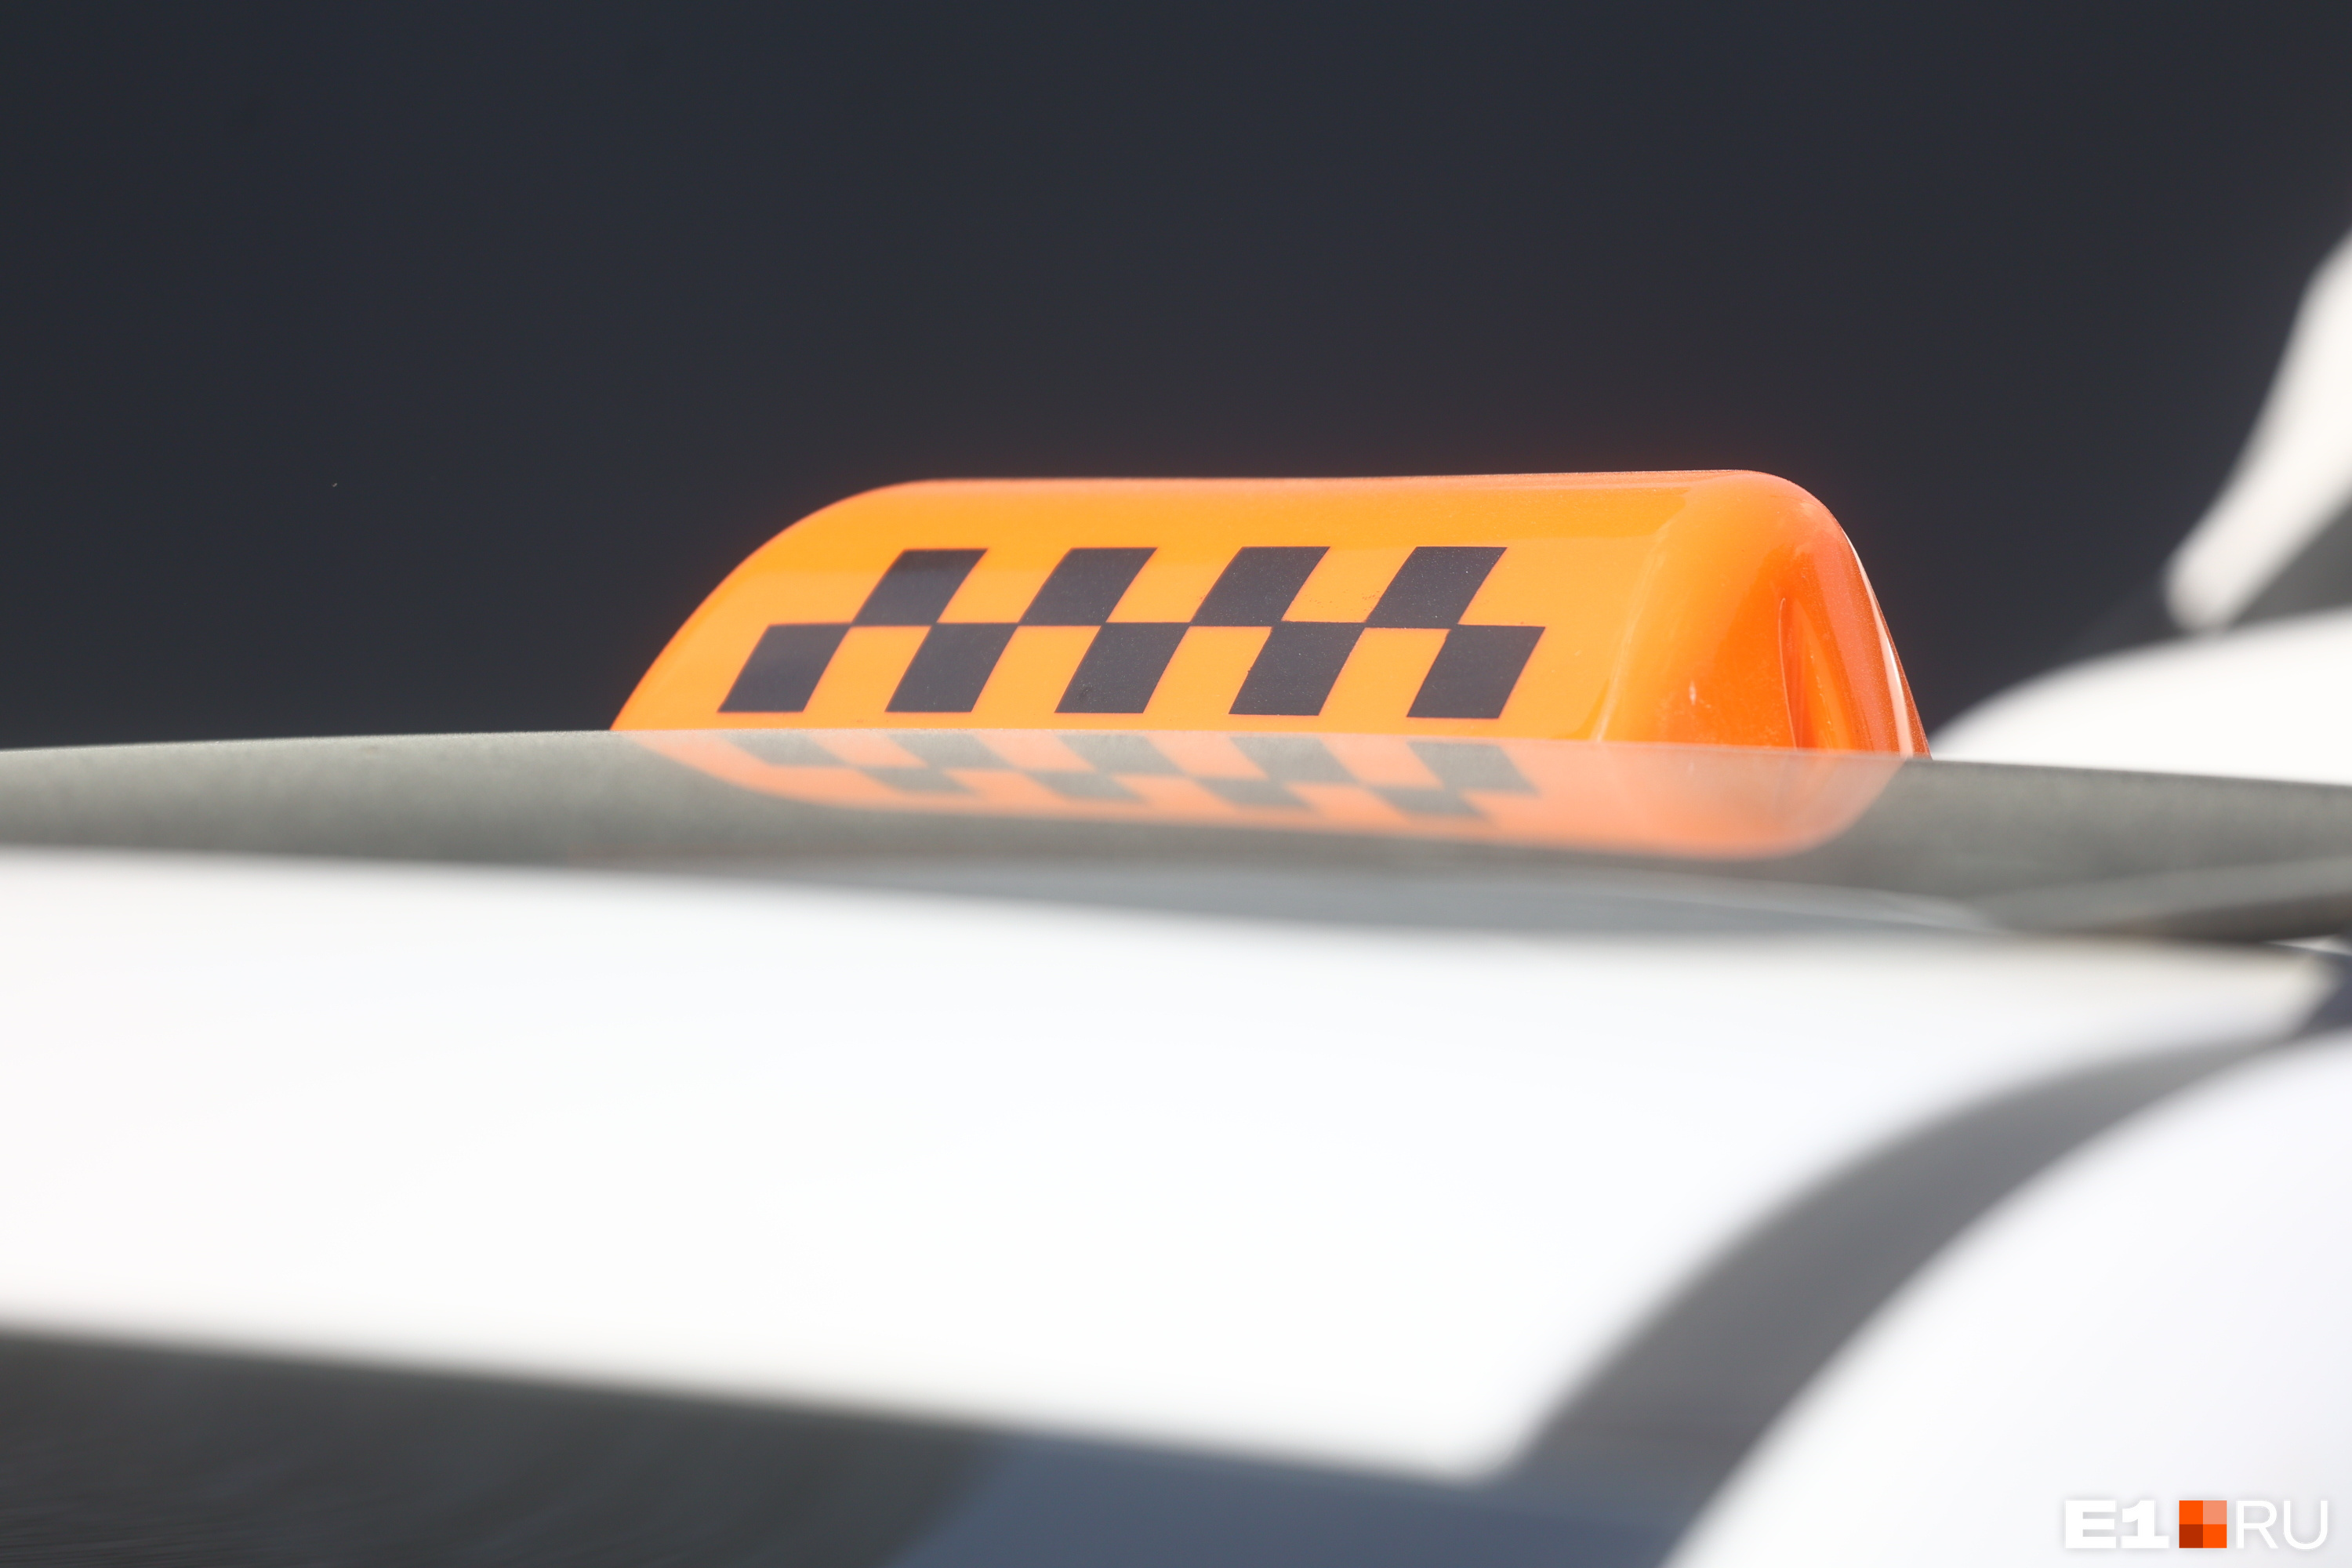 По новому закону автомобили необходимо привести к единообразию — все такси должны иметь соответствующий рисунок шашечек на машине и оранжевый фонарь на крыше